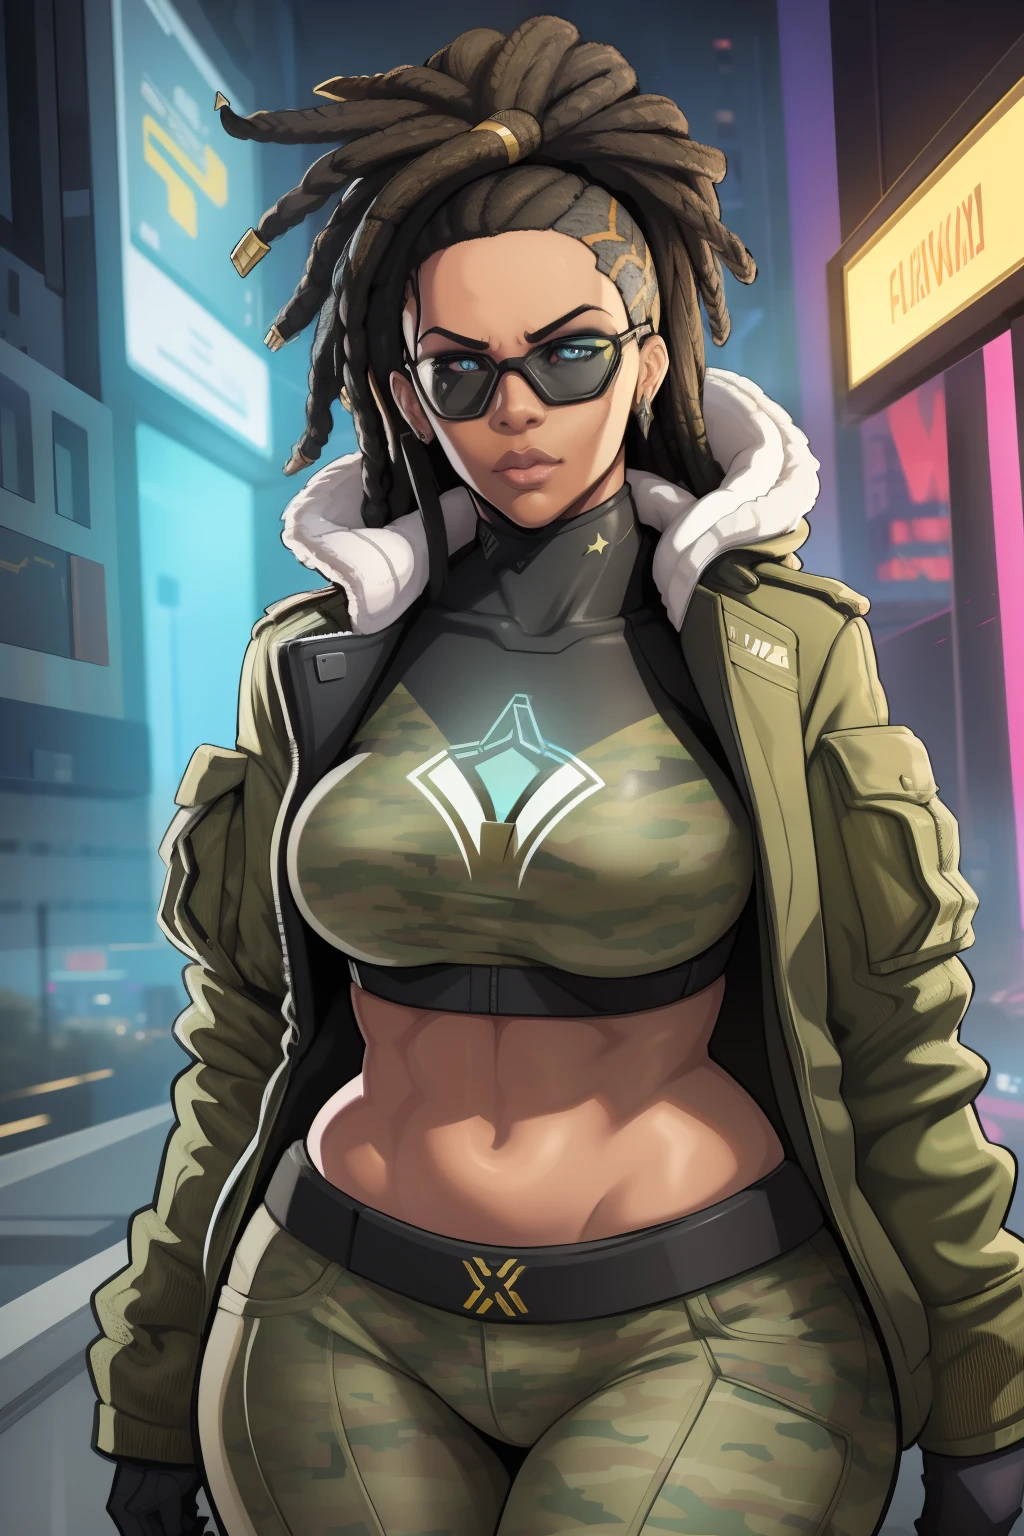 súper alta resolución, mejor calidad, (ilustración: 1.2), iluminación cinematográfica, Mujer afroamericana muy alta de 23 años que viste ropa de camuflaje militar y forma parte de un equipo llamado Crows., Además, lleva gafas de sol de espejo y también tiene rastas en el pelo. (Ciberpunk 2020)